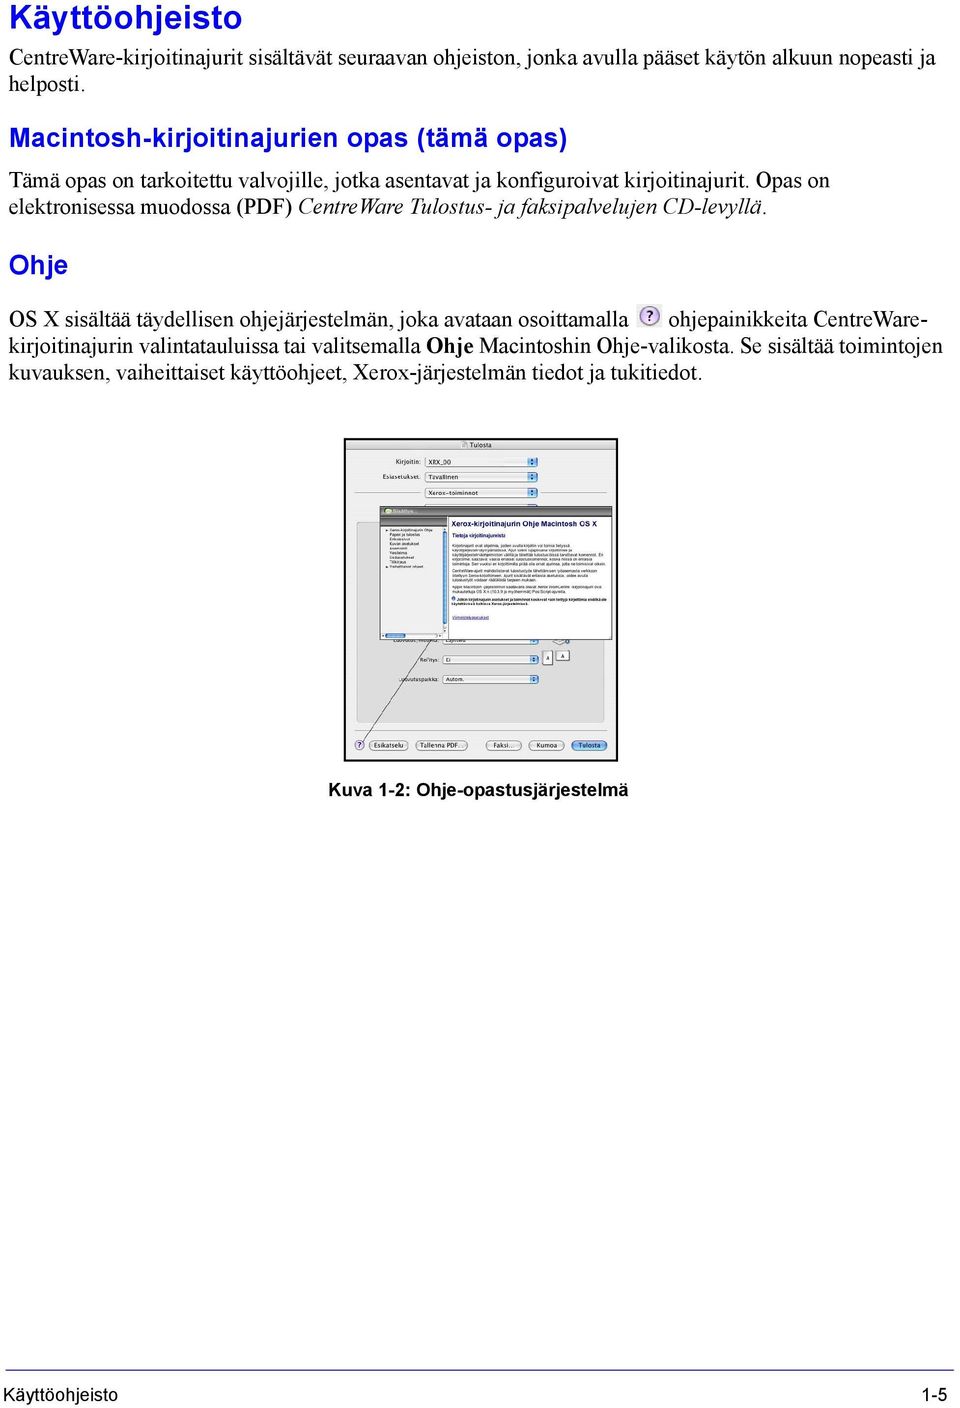 Opas on elektronisessa muodossa (PDF) CentreWare Tulostus- ja faksipalvelujen CD-levyllä.